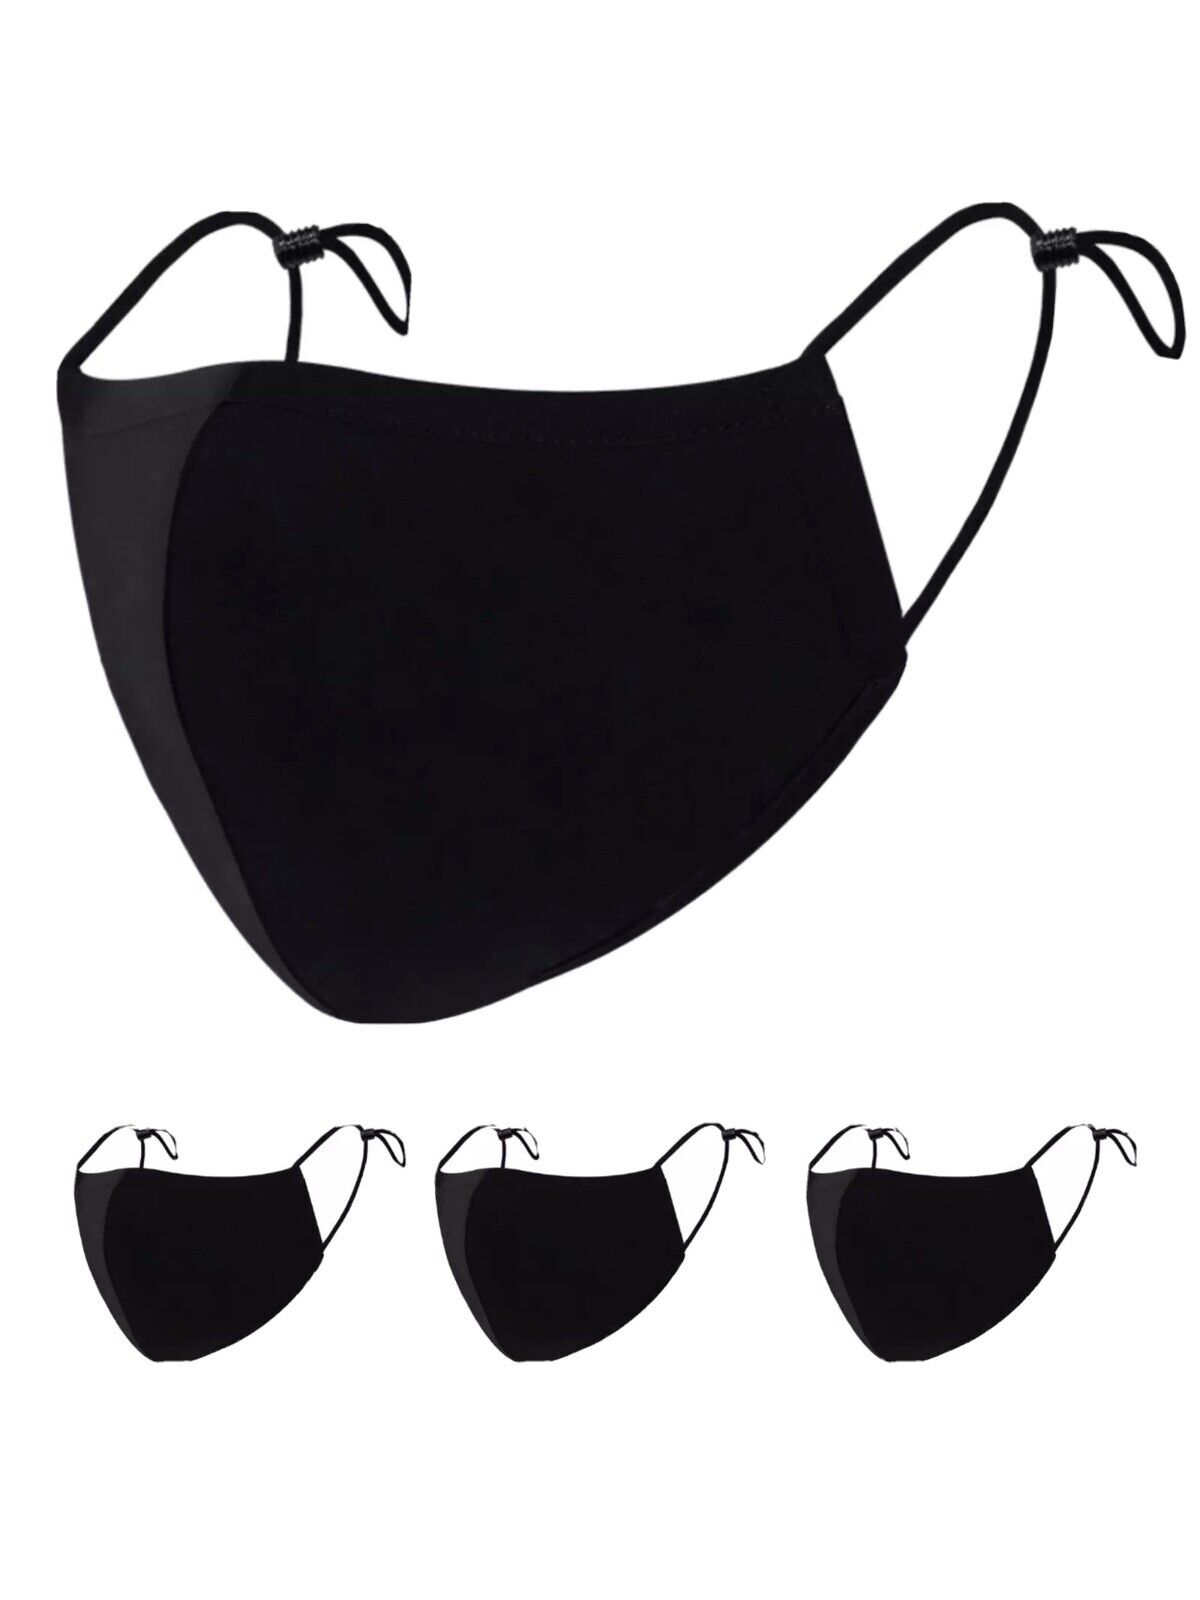 6 Face Masks Black Cotton Adult Mask Adjustable Elastic Loops Washable Reusable Unbranded